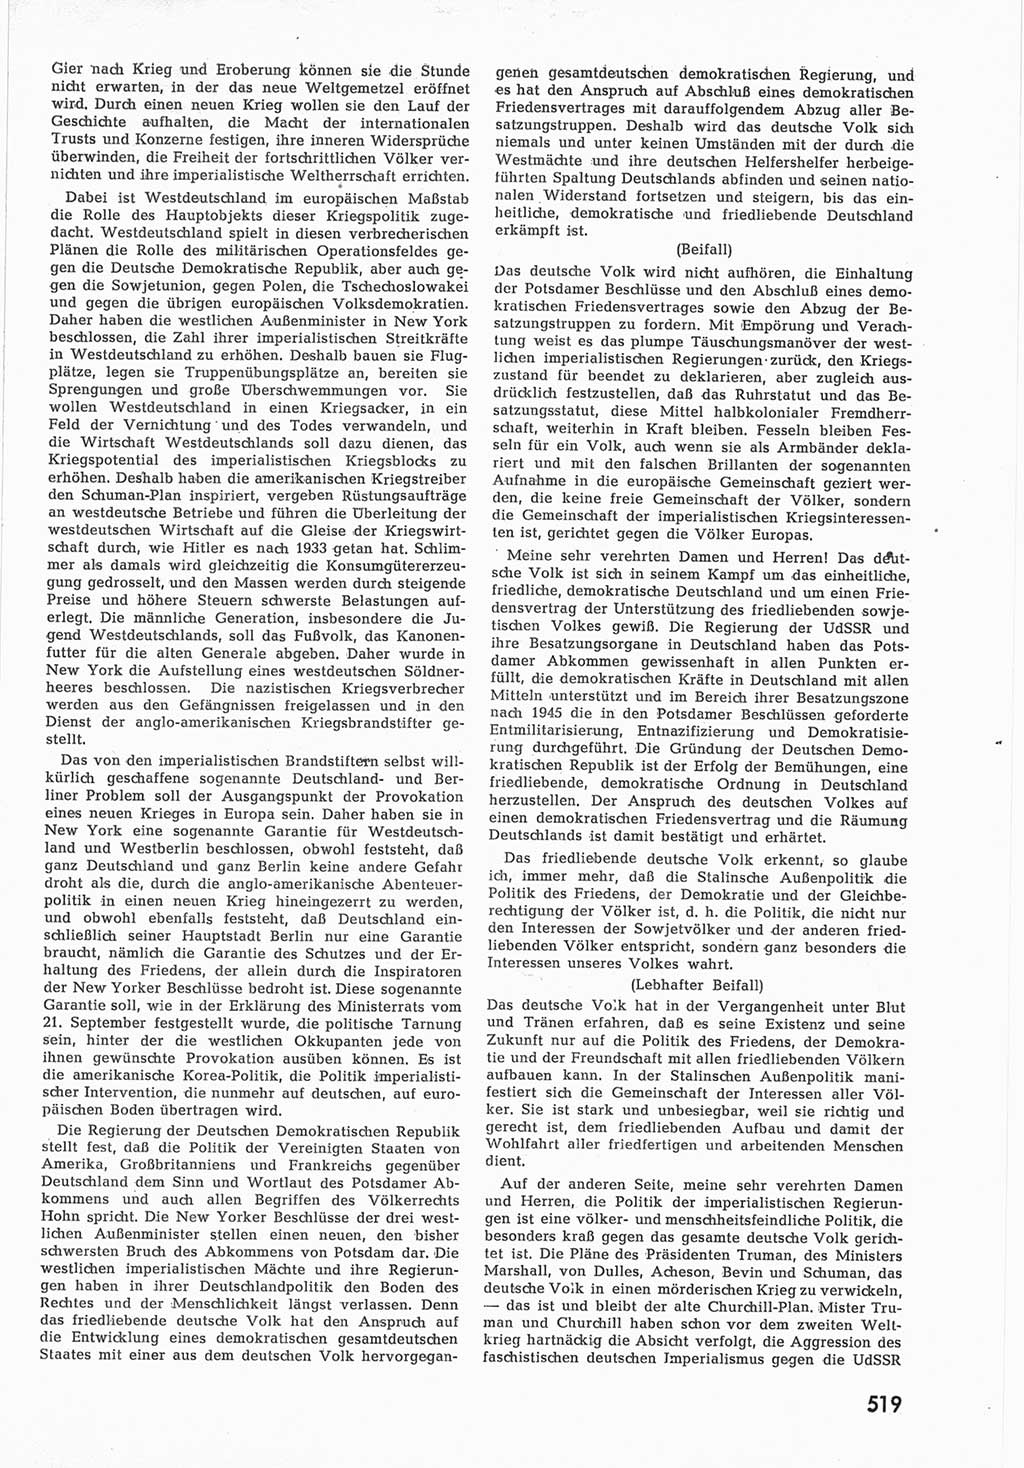 Provisorische Volkskammer (VK) der Deutschen Demokratischen Republik (DDR) 1949-1950, Dokument 537 (Prov. VK DDR 1949-1950, Dok. 537)